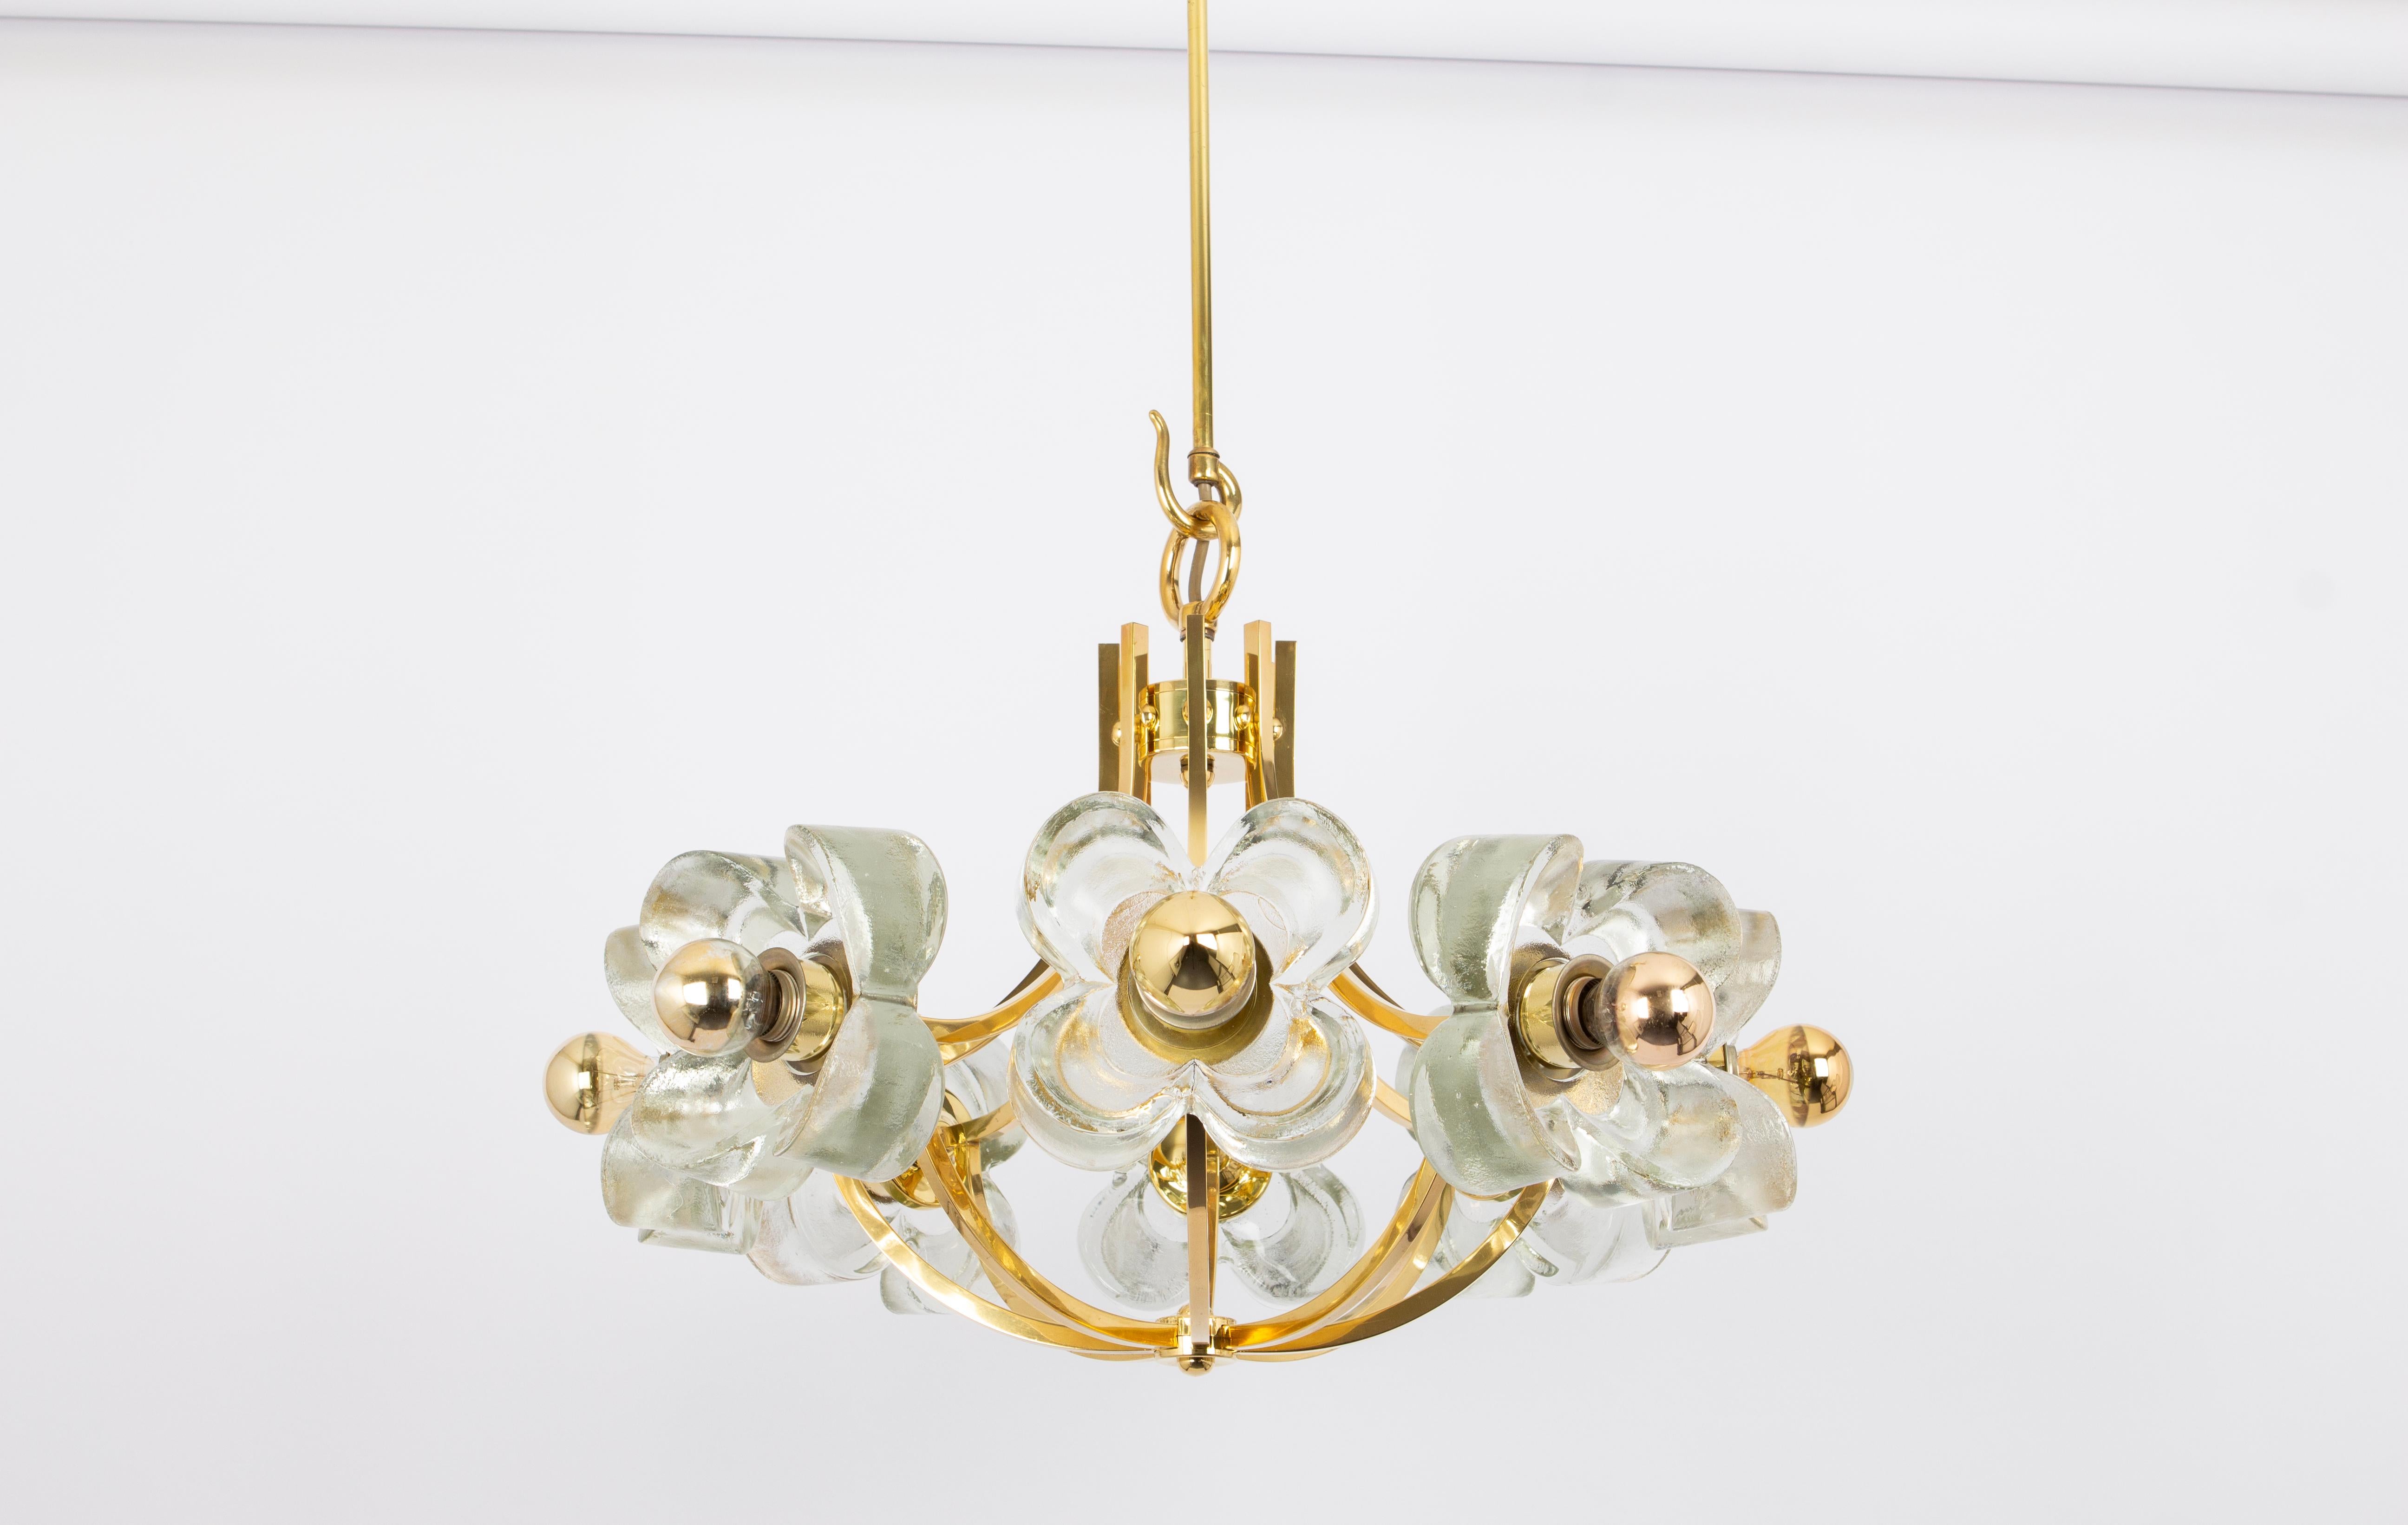 Magnifique lustre/pendentif doré de grande taille et de grande qualité par Sische, Allemagne, années 1970.

Il est composé d'une monture en laiton décorée de 8 verres en cristal.
La lampe peut recevoir 8 ampoules à petit culot (max. 40W par